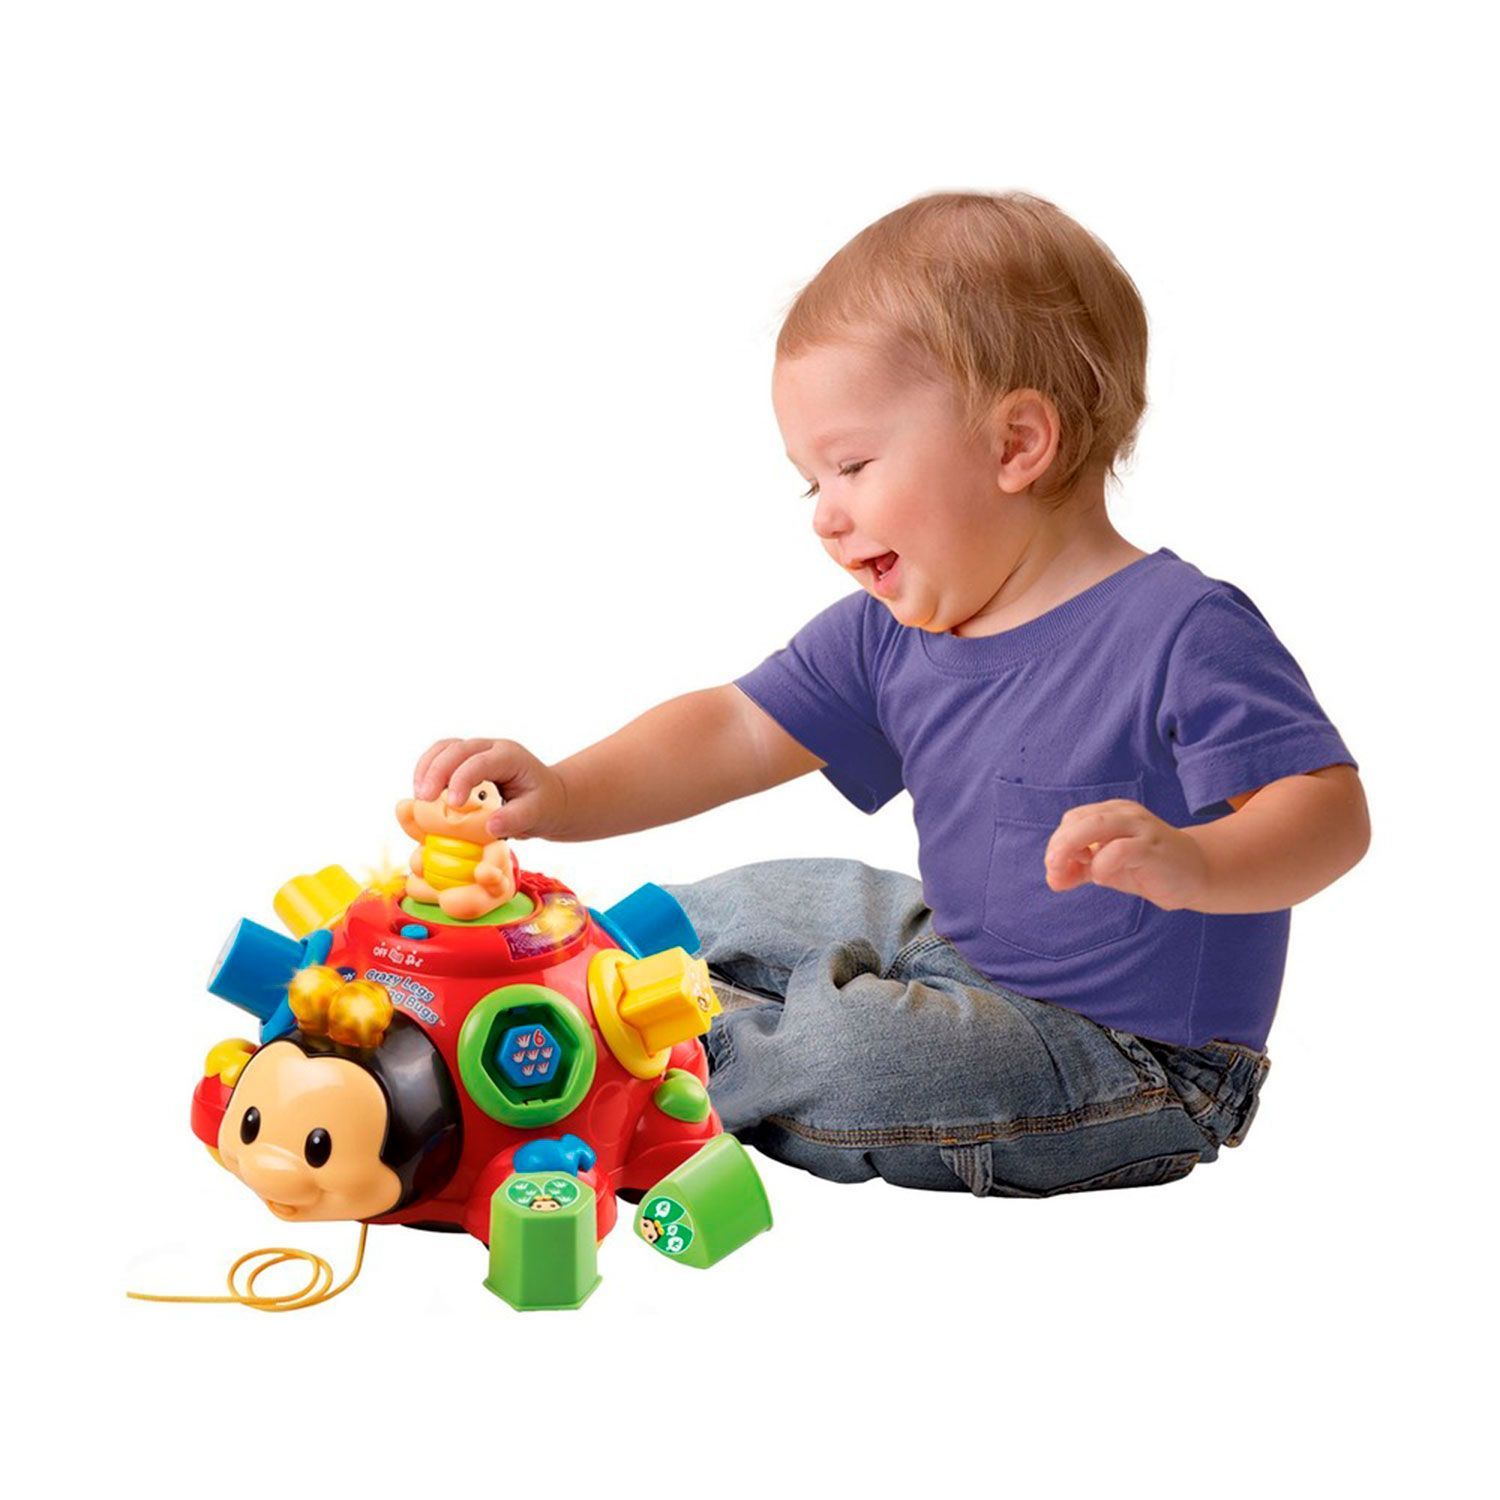 Подарок ребенку работ. Vtech Божья коровка. Каталка-игрушка Vtech говорящий Жук (80-111226) со звуковыми эффектами. Detski igruski. Развивающиеся игрушки для детей.